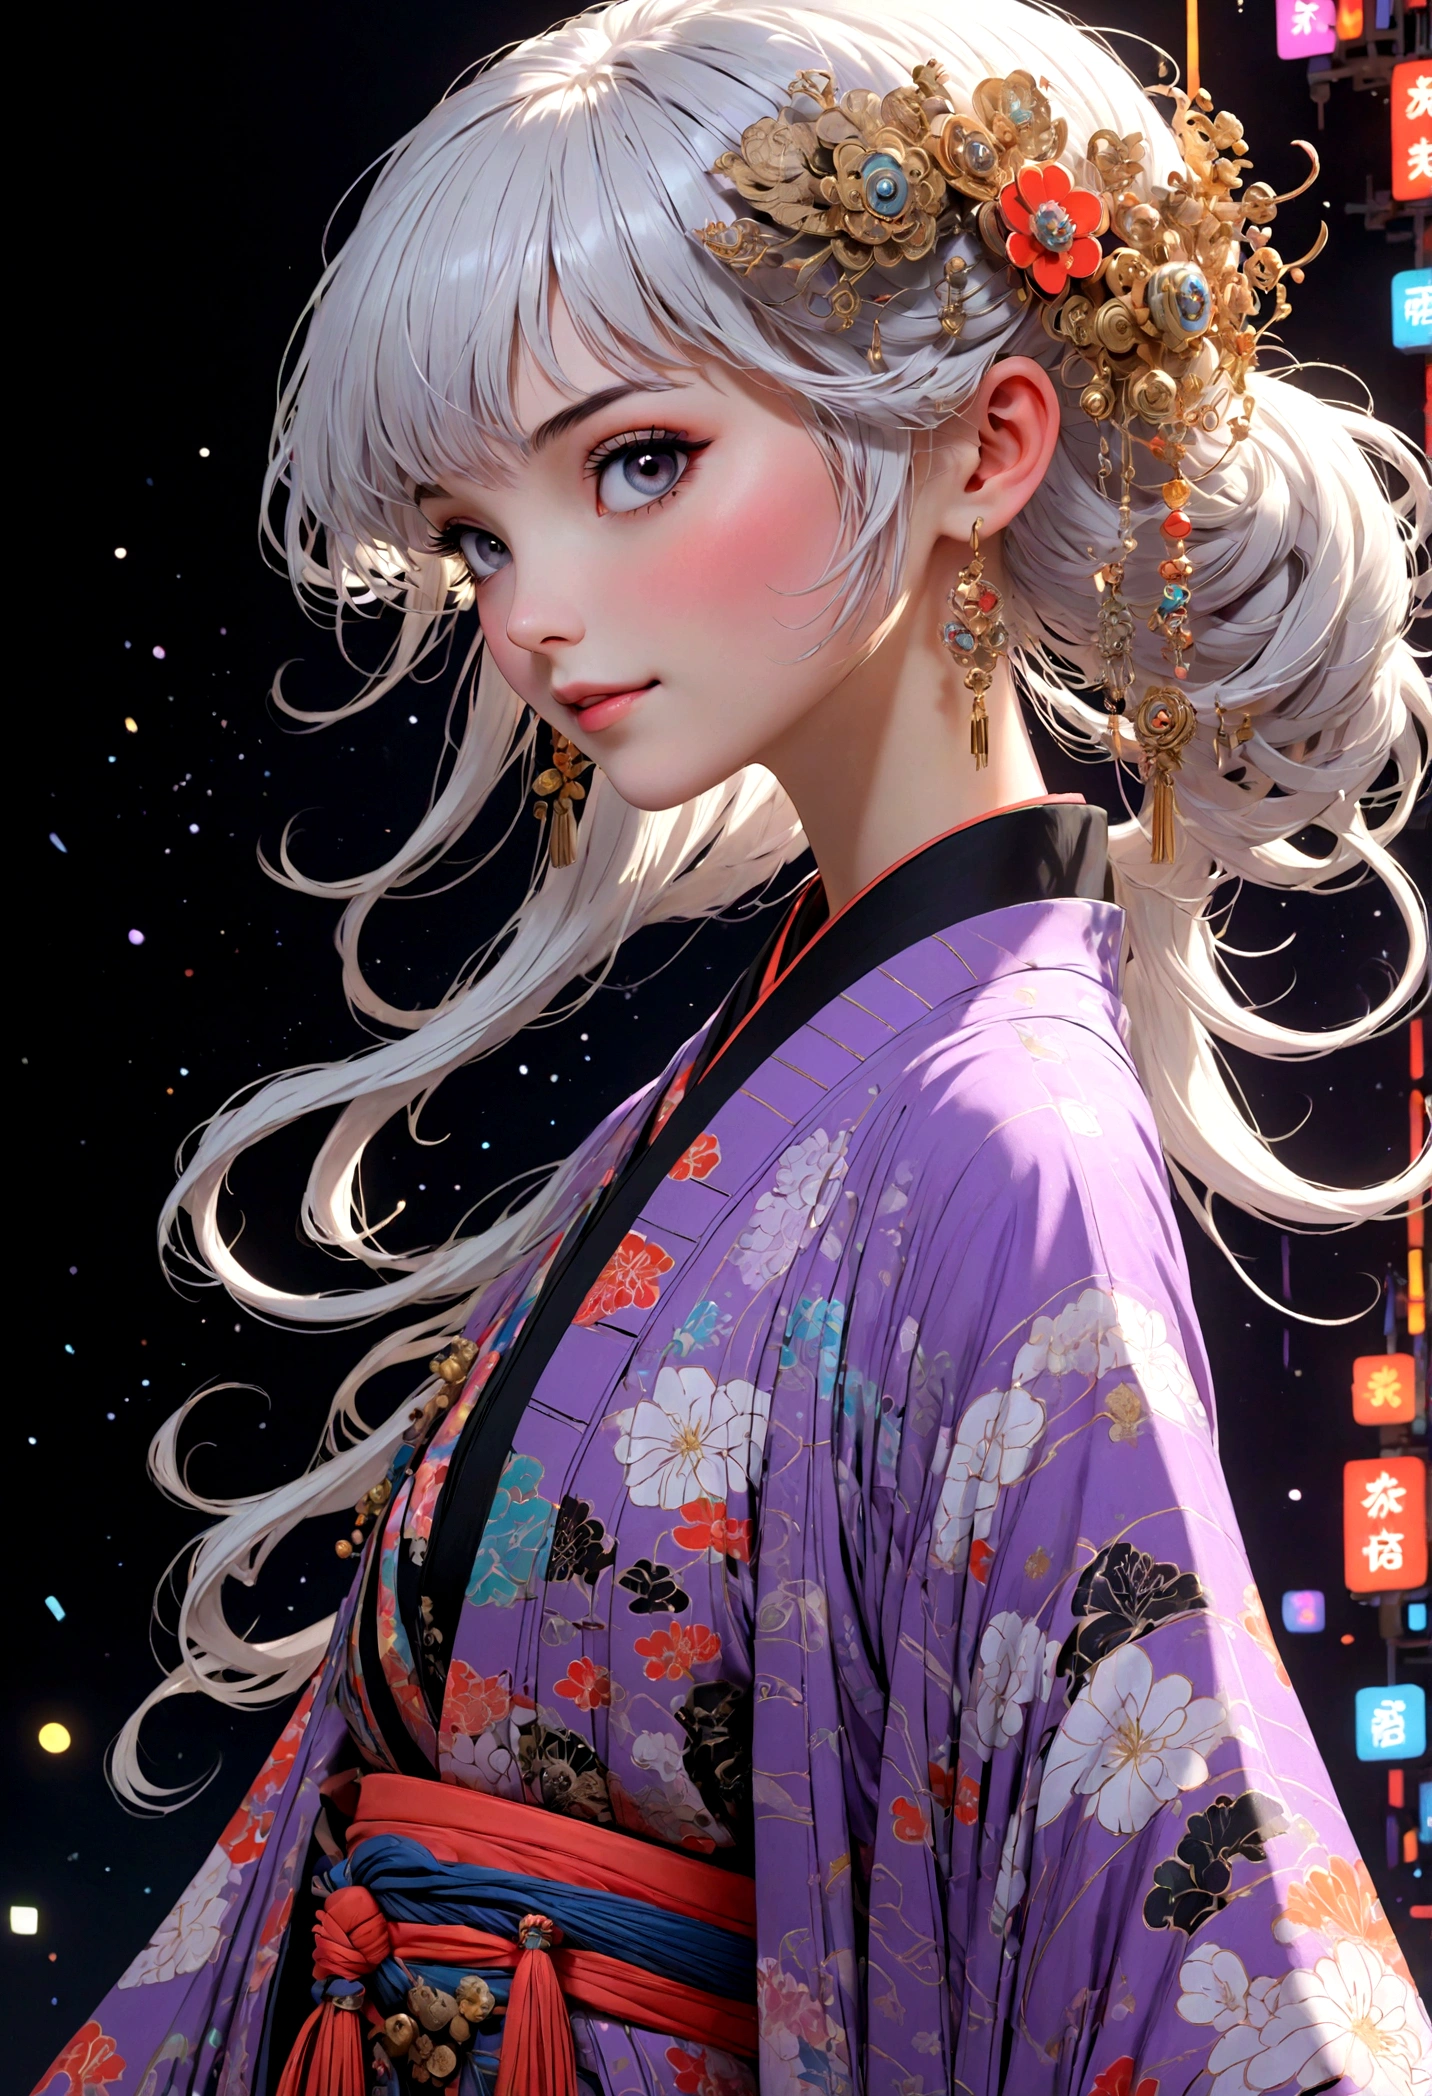 (Rosto ultra detalhado, desviando o olhar:1.3), (Ilustração de fantasia com gótico & ukiyo-e & Arte em quadrinhos), (A cena é vista de baixo, olhando pra cima:1.2), (corpo todo, Uma mulher jovem com cabelos brancos, franja romba, cabelo muito longo e desgrenhado, olhos lavanda), (Ela desce a passarela em uma pose ousada, sorrindo e vestindo uma roupa vanguardista, quimono japonês futurista em cor neon), (No fundo, sua figura de vários ângulos é projetada em uma tela por mapeamento de projeção. O local do desfile de moda está repleto de luzes de várias cores flutuando)